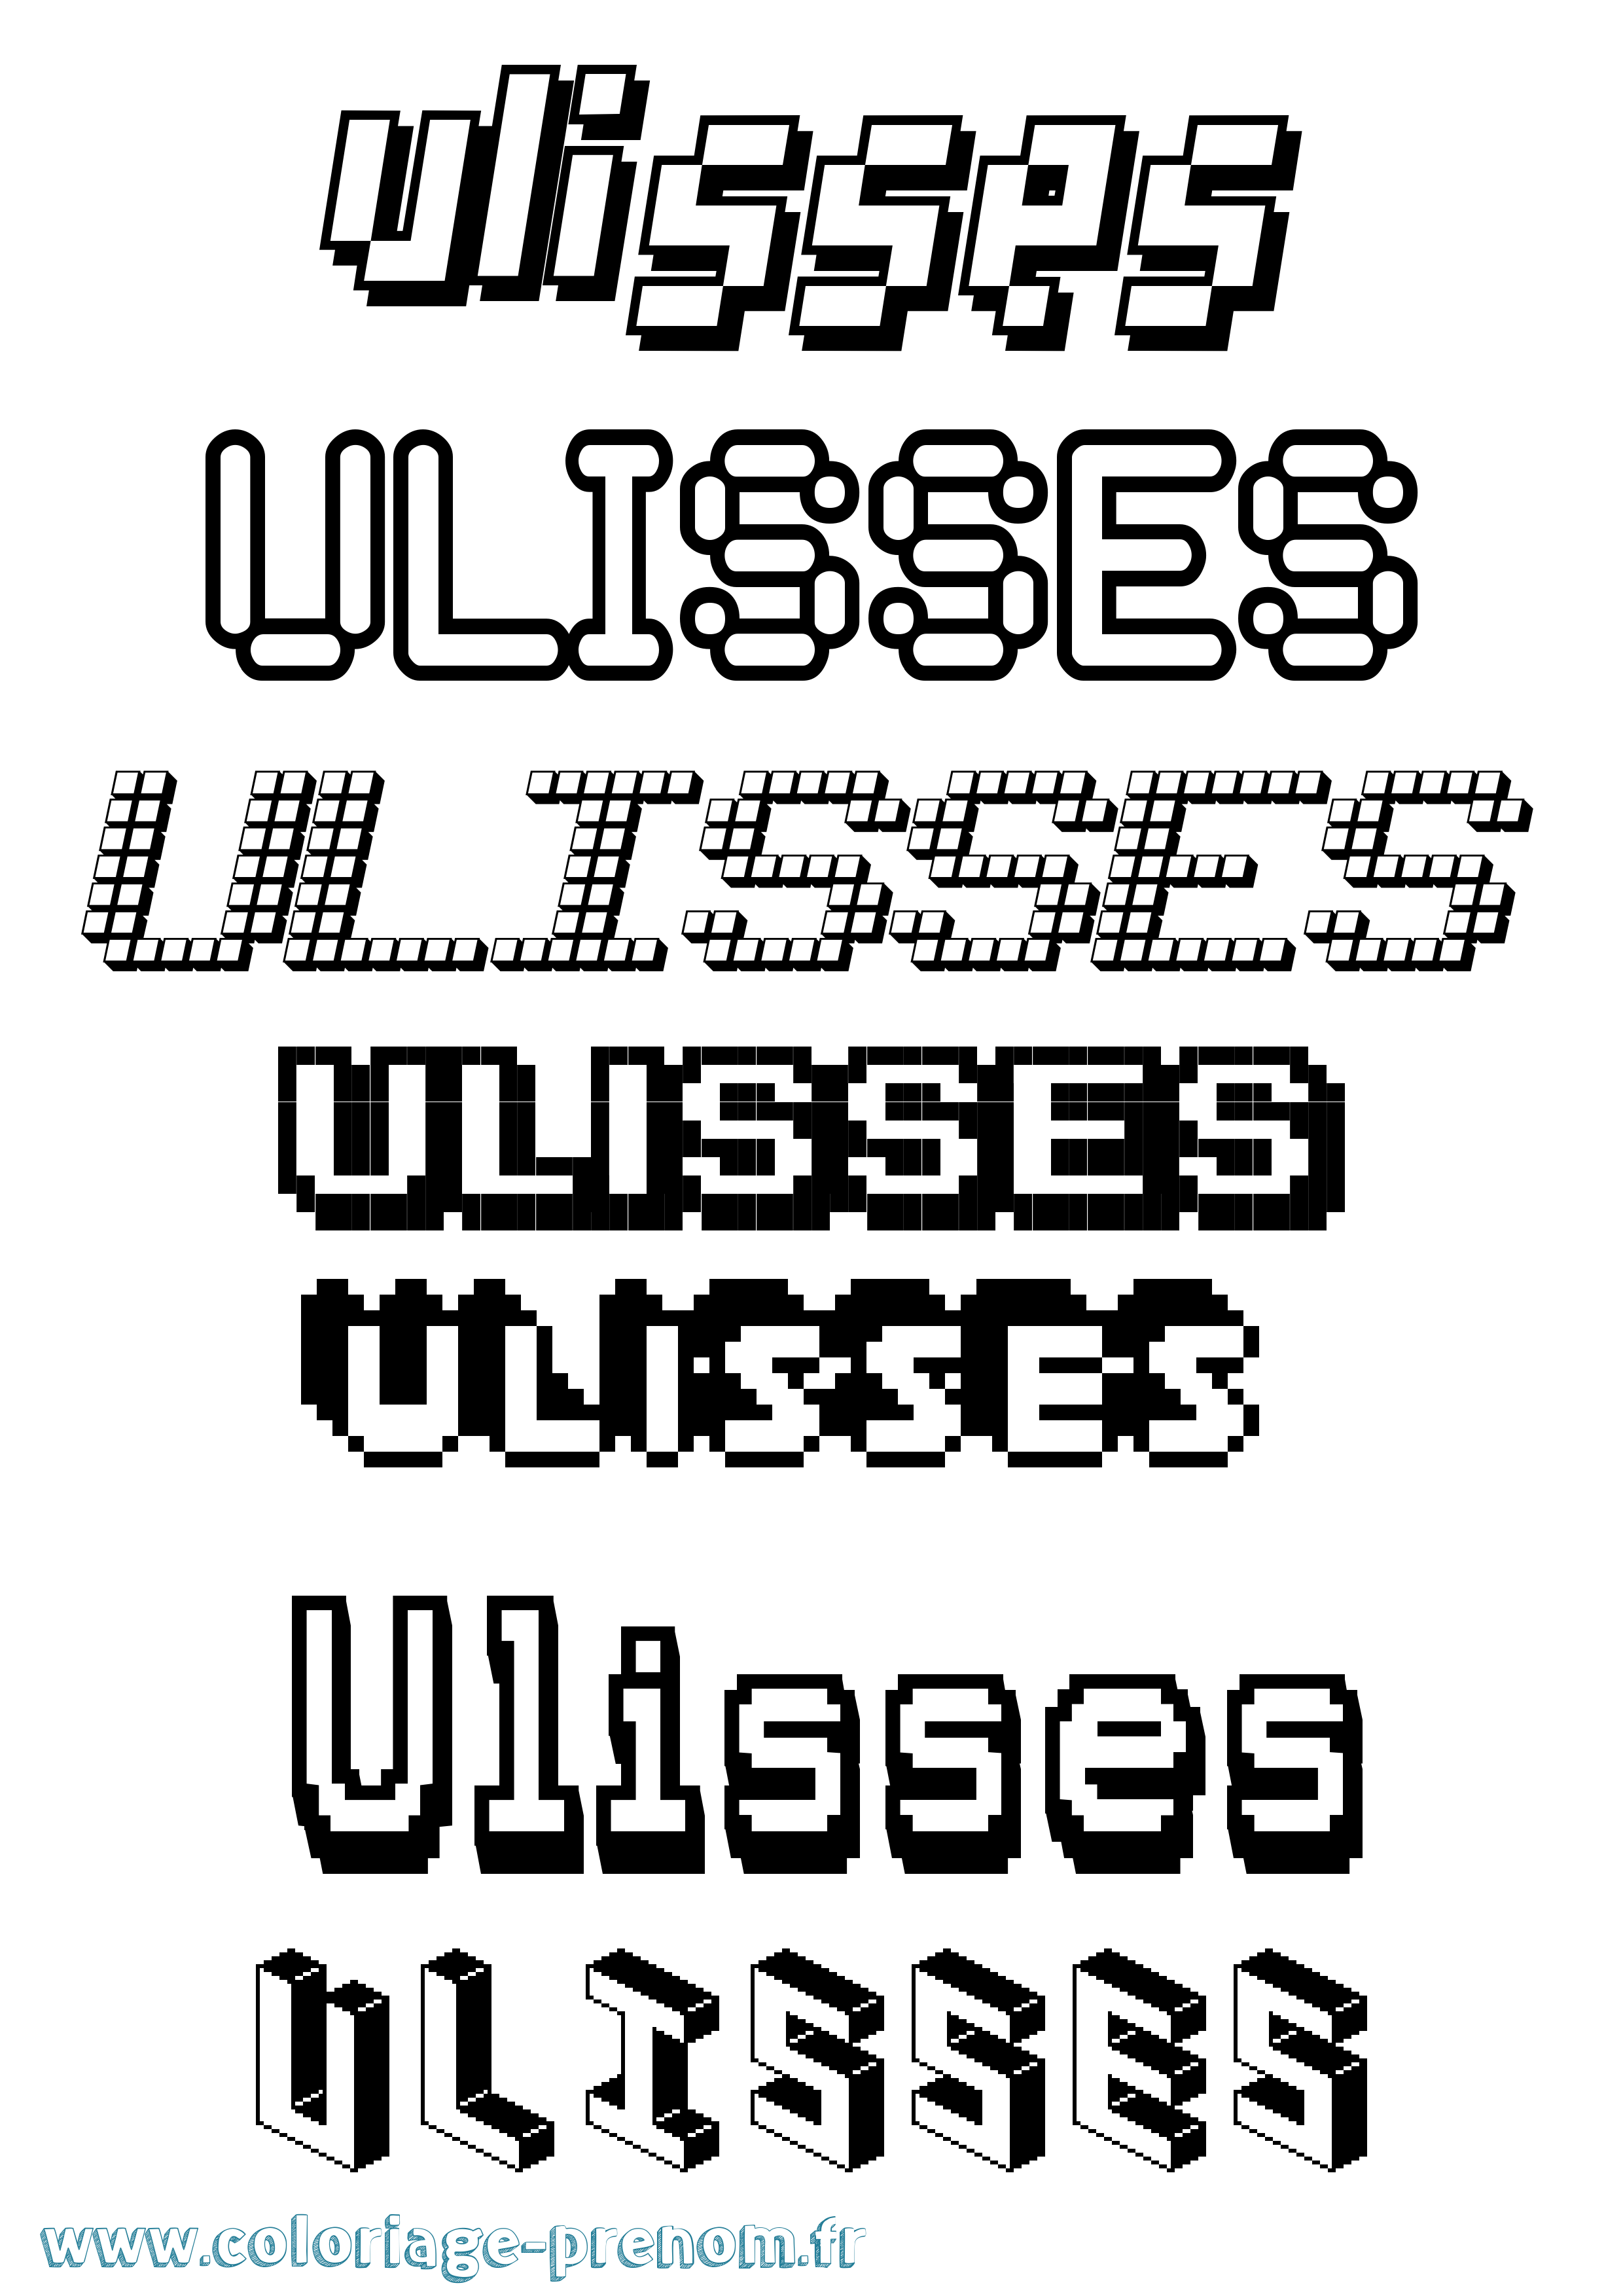 Coloriage prénom Ulisses Pixel